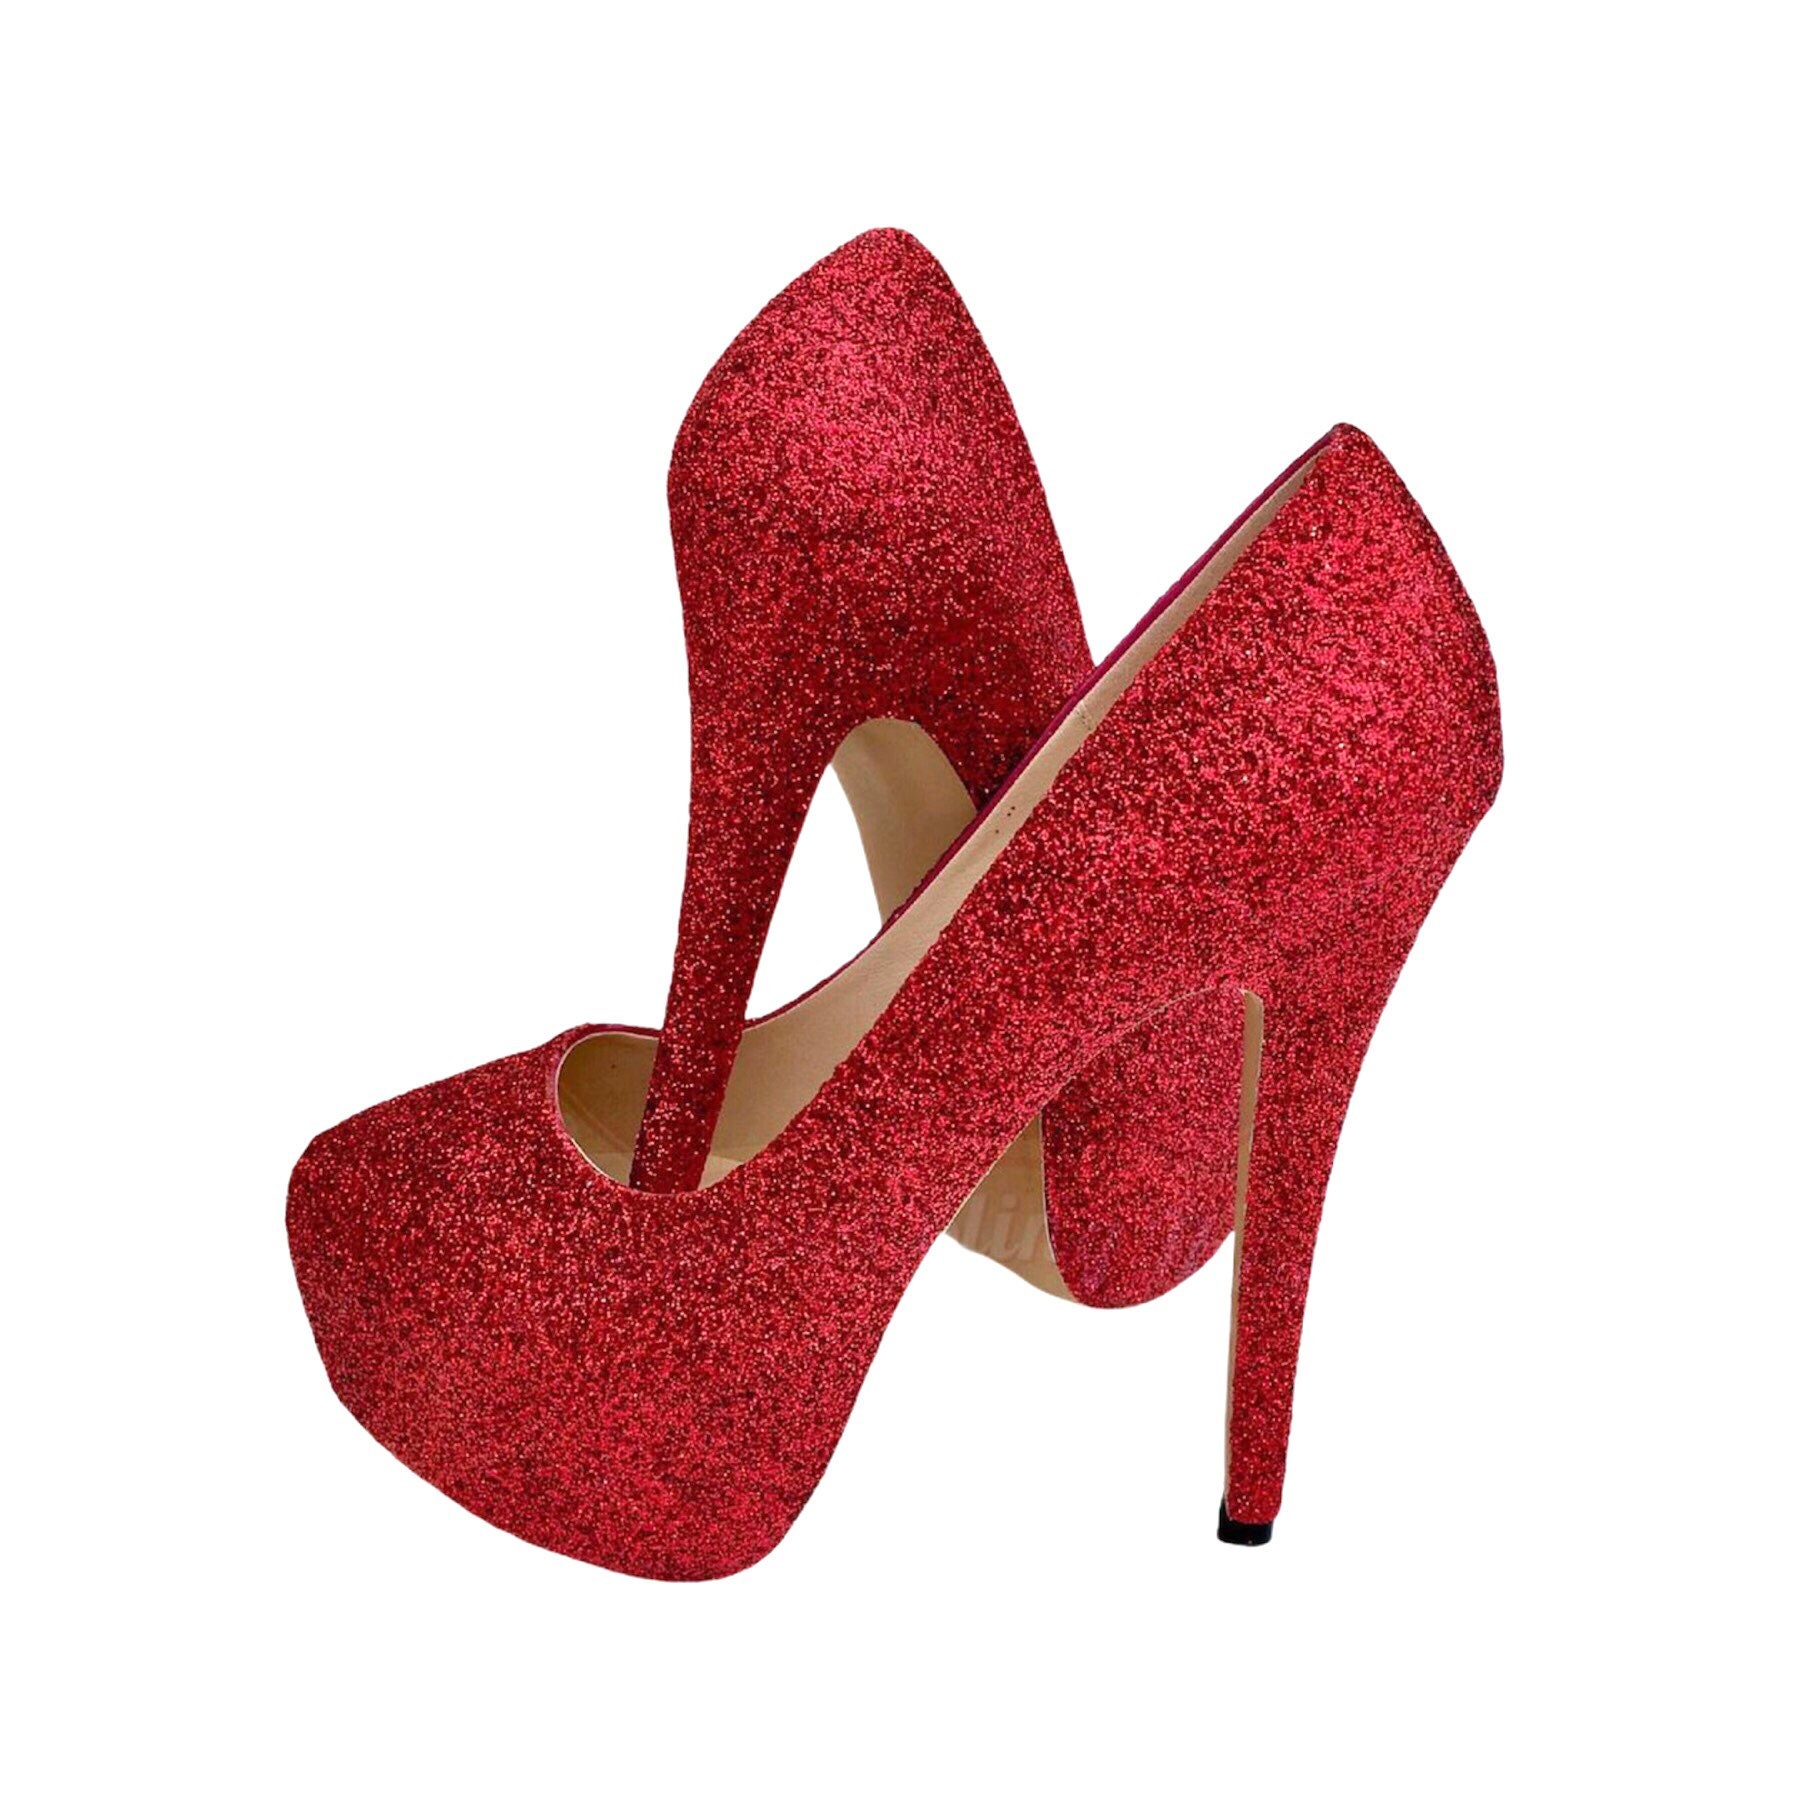 Forventer afspejle Afsky Red Platform Heels Red Glitter Heels Glitter Platform Heels | Etsy